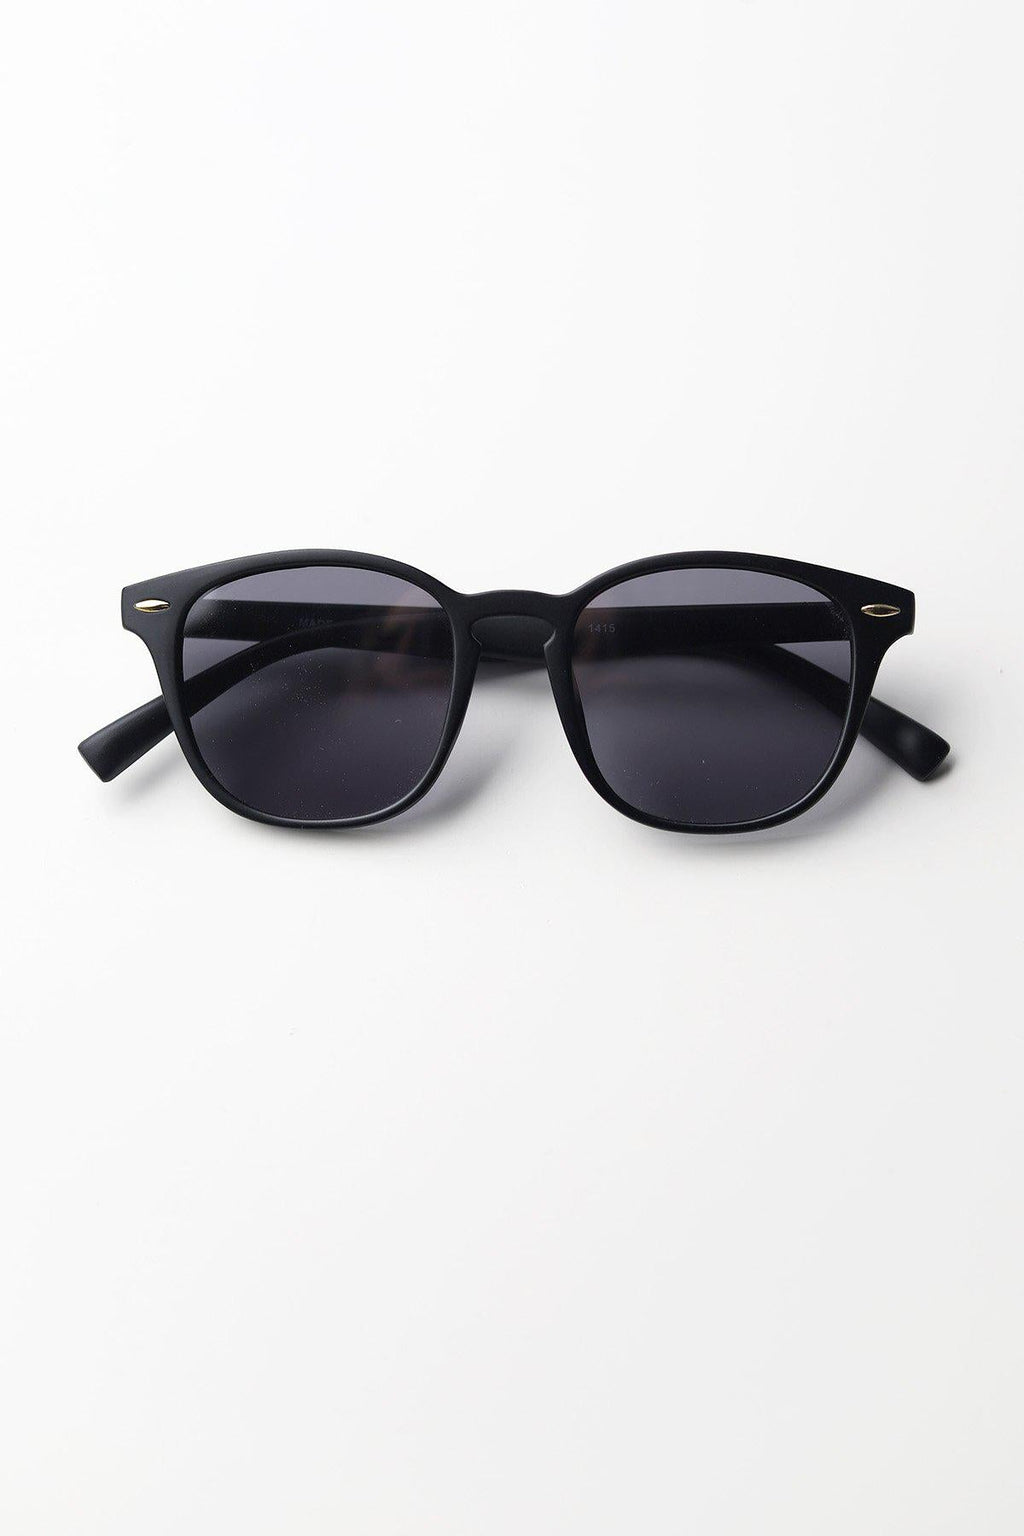 Casey Unisex Sunglasses - Black Frame + Smoke Lens